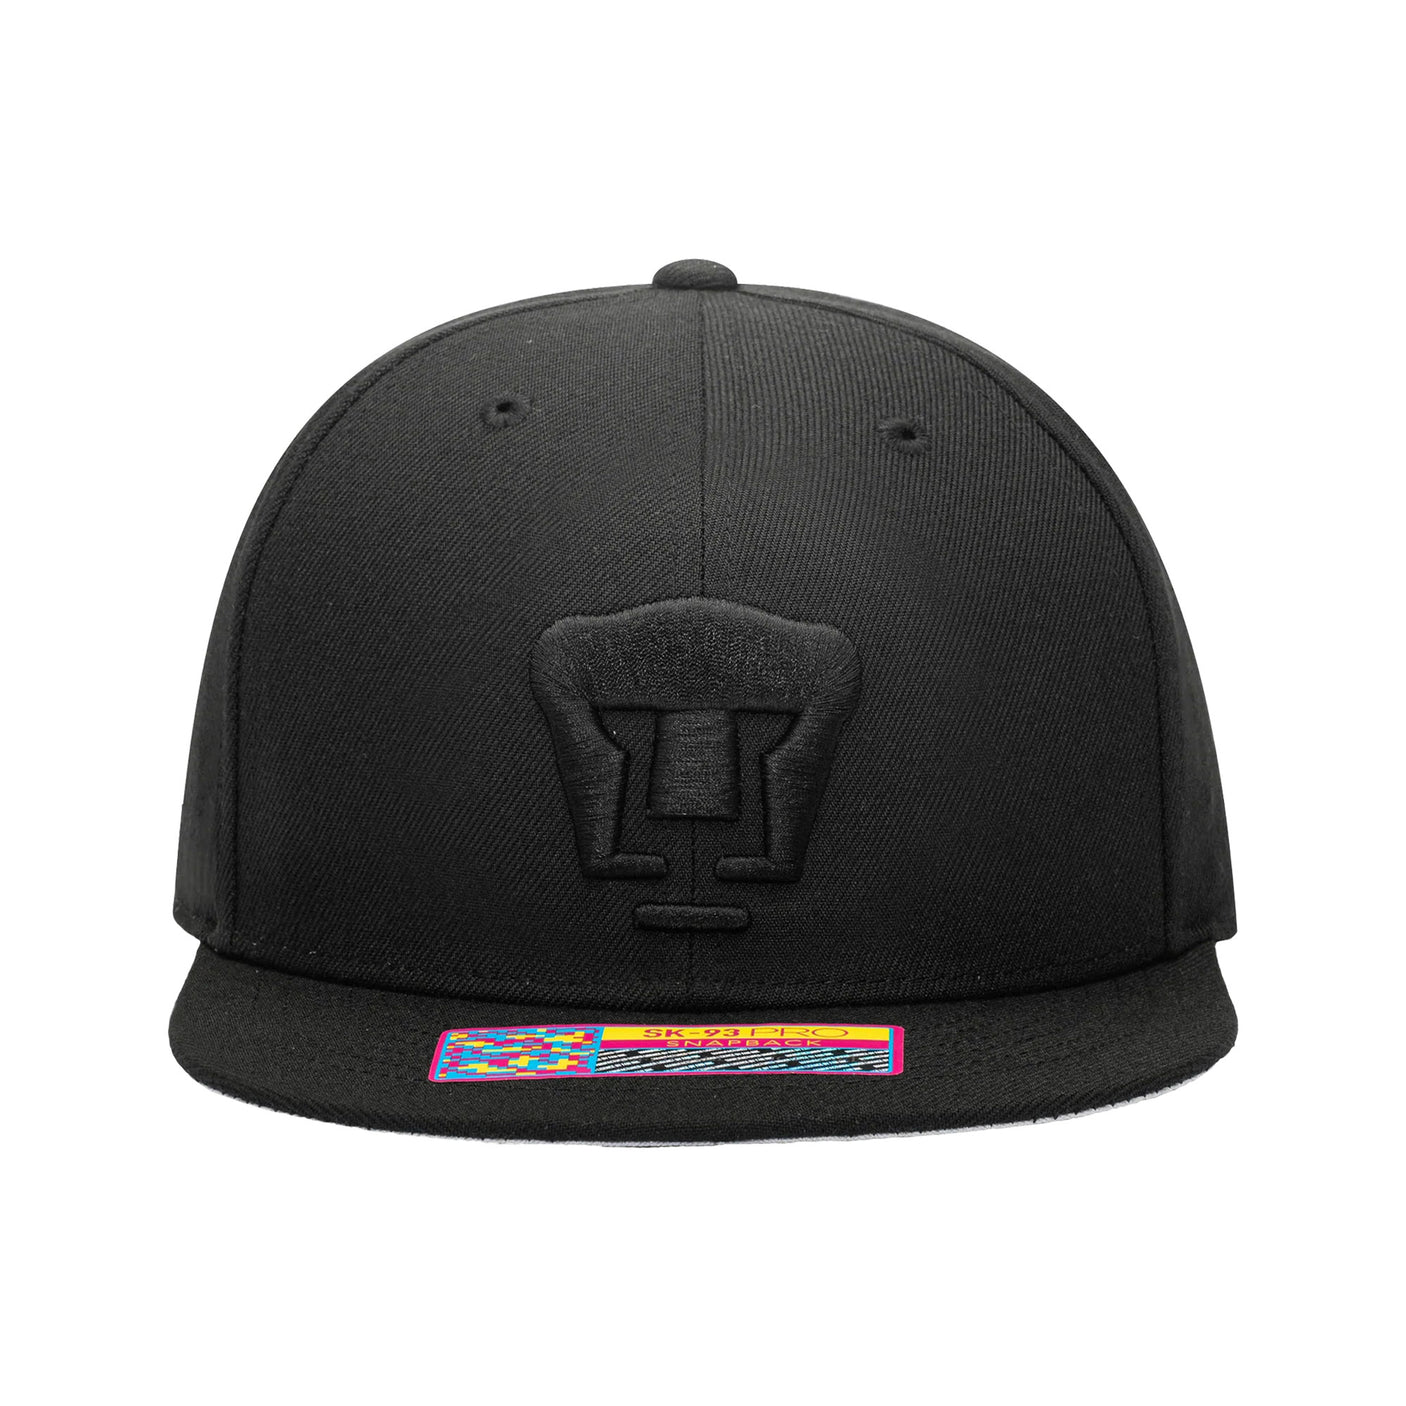 Fan Ink Pumas Dusk Snap Back Hat Black/Black Front